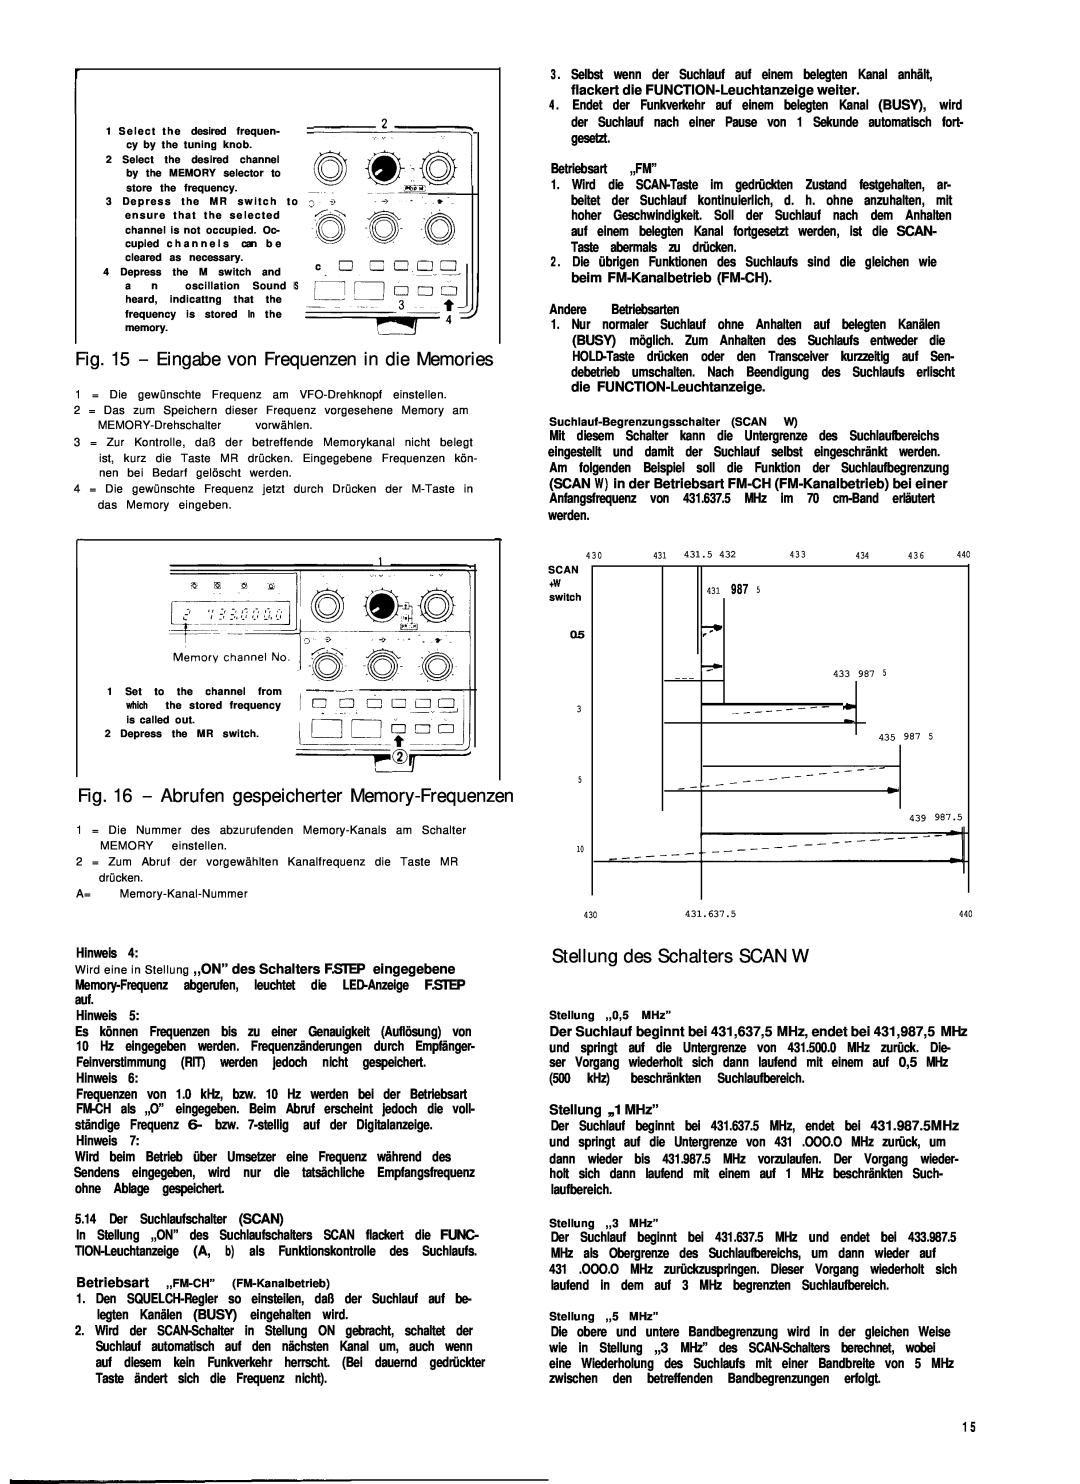 Kenwood TS-780 manual Eingabe von Frequenzen in die Memories, Abrufen gespeicherter Memory-Frequenzen 